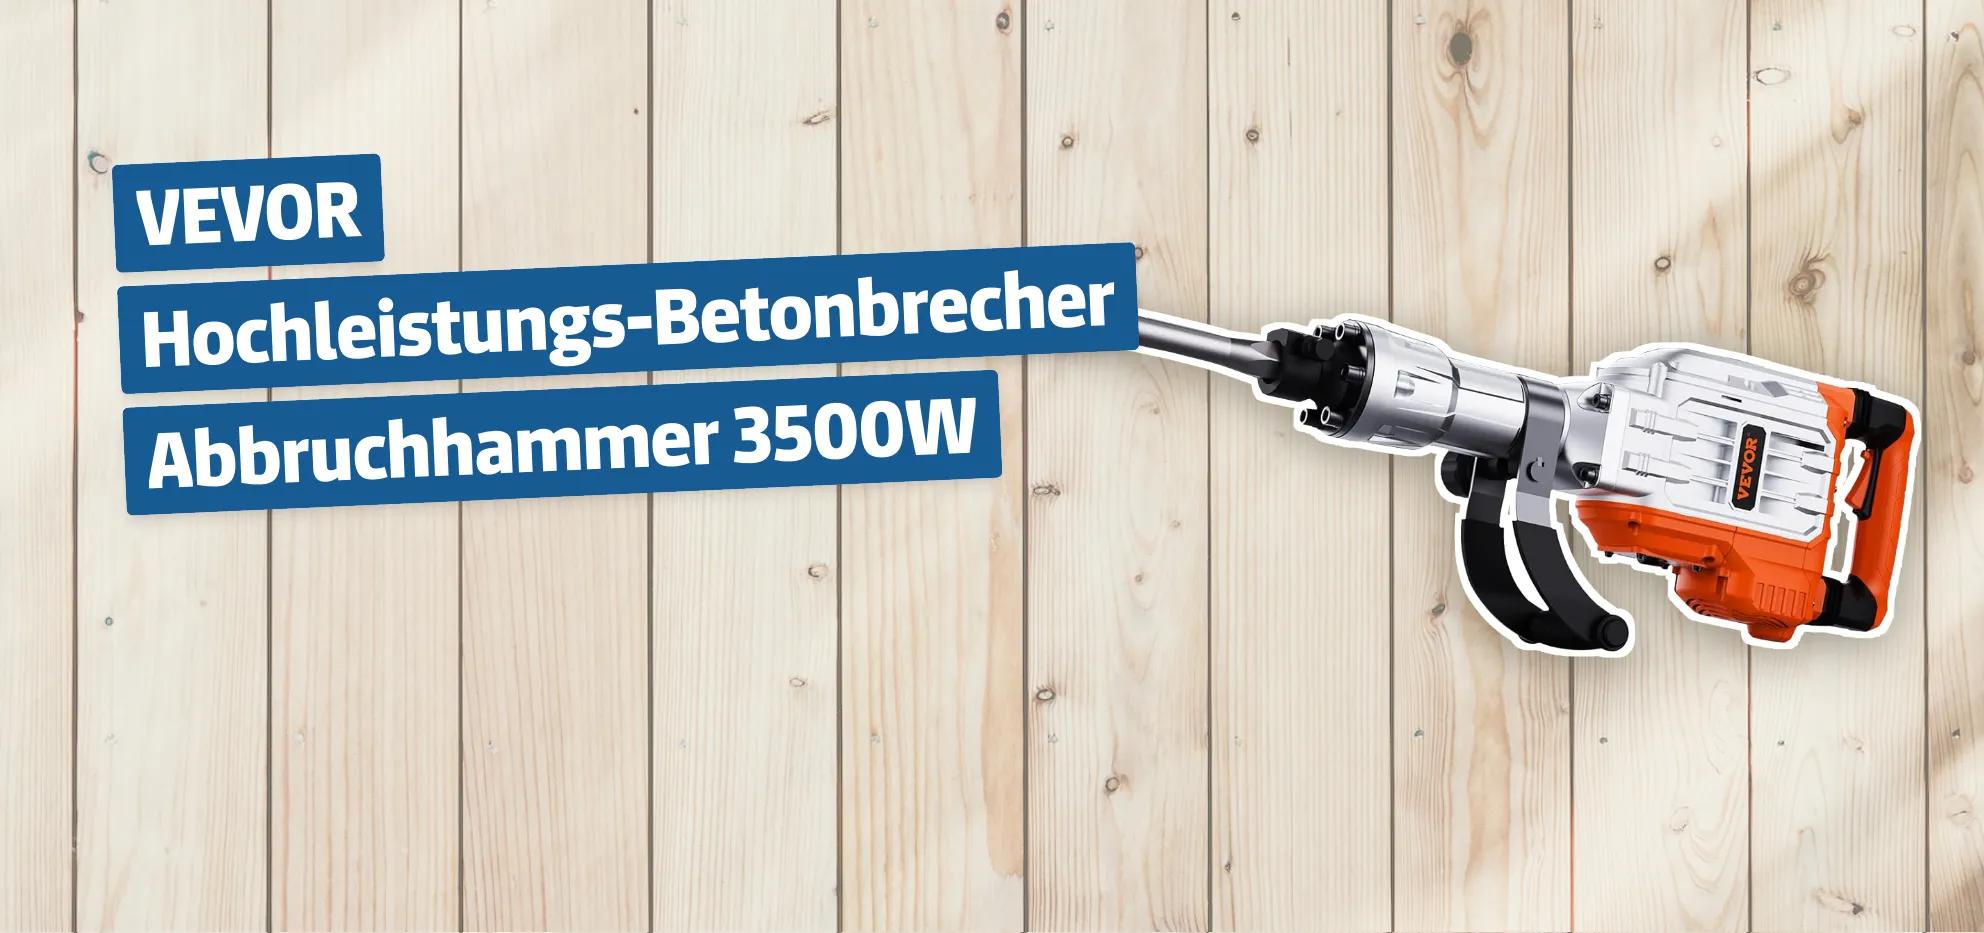 VEVOR Hochleistungs-Betonbrecher Abbruchhammer 3500W